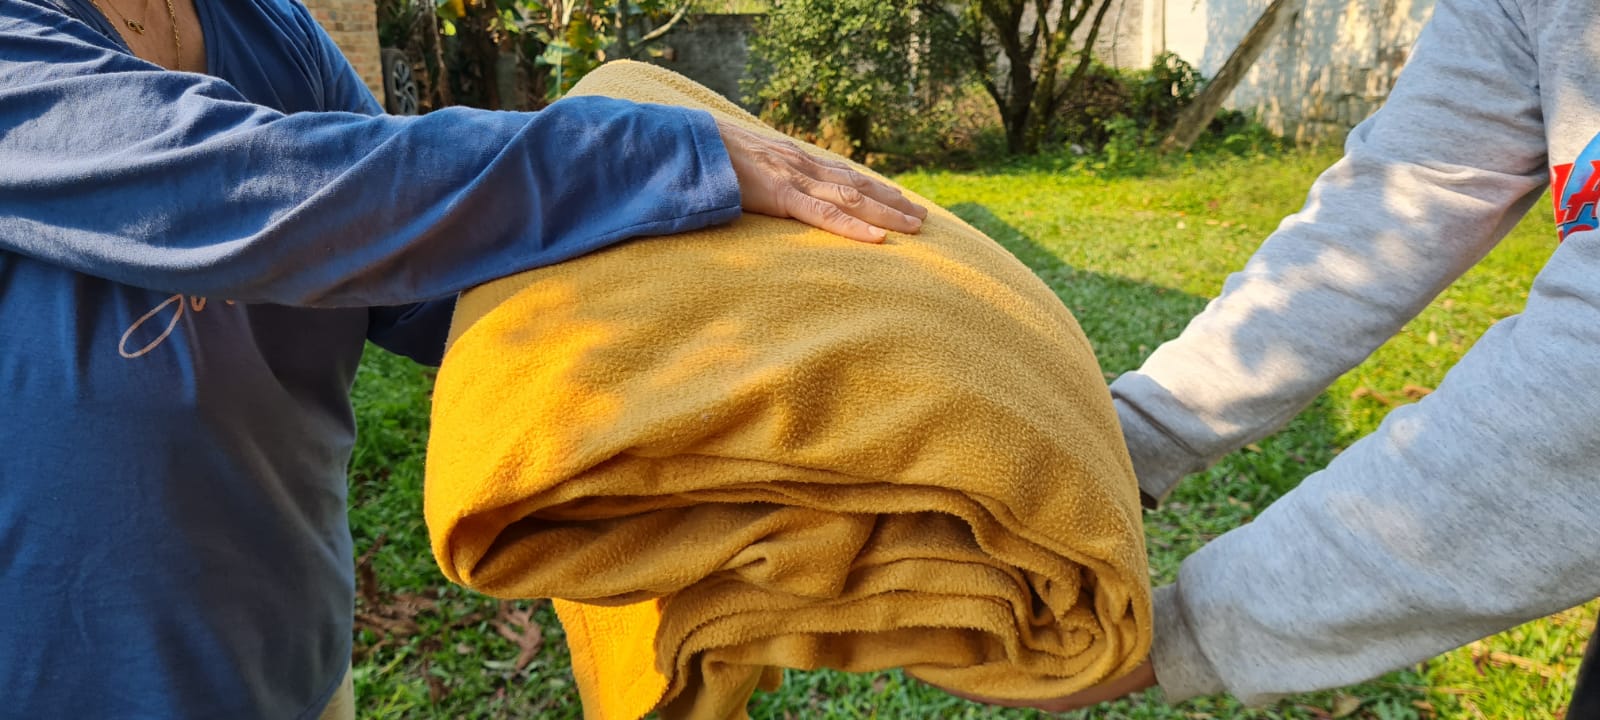 Com a previsão de frio intenso, Prefeitura reforça pedido de doações de cobertores em Gravataí